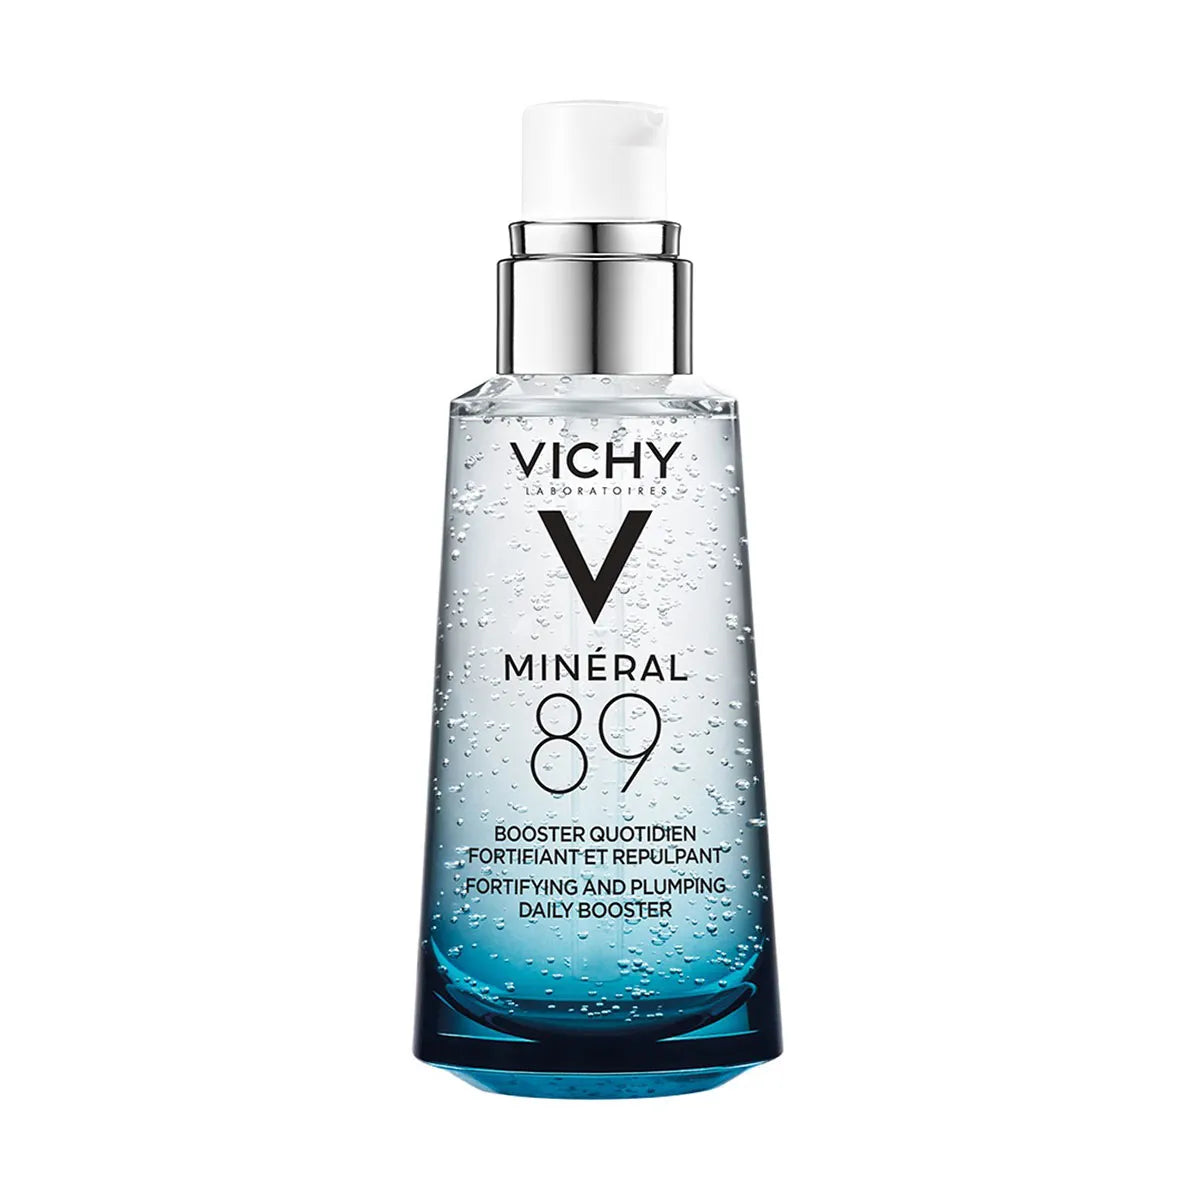 Vichy Hidratación Mineral 89